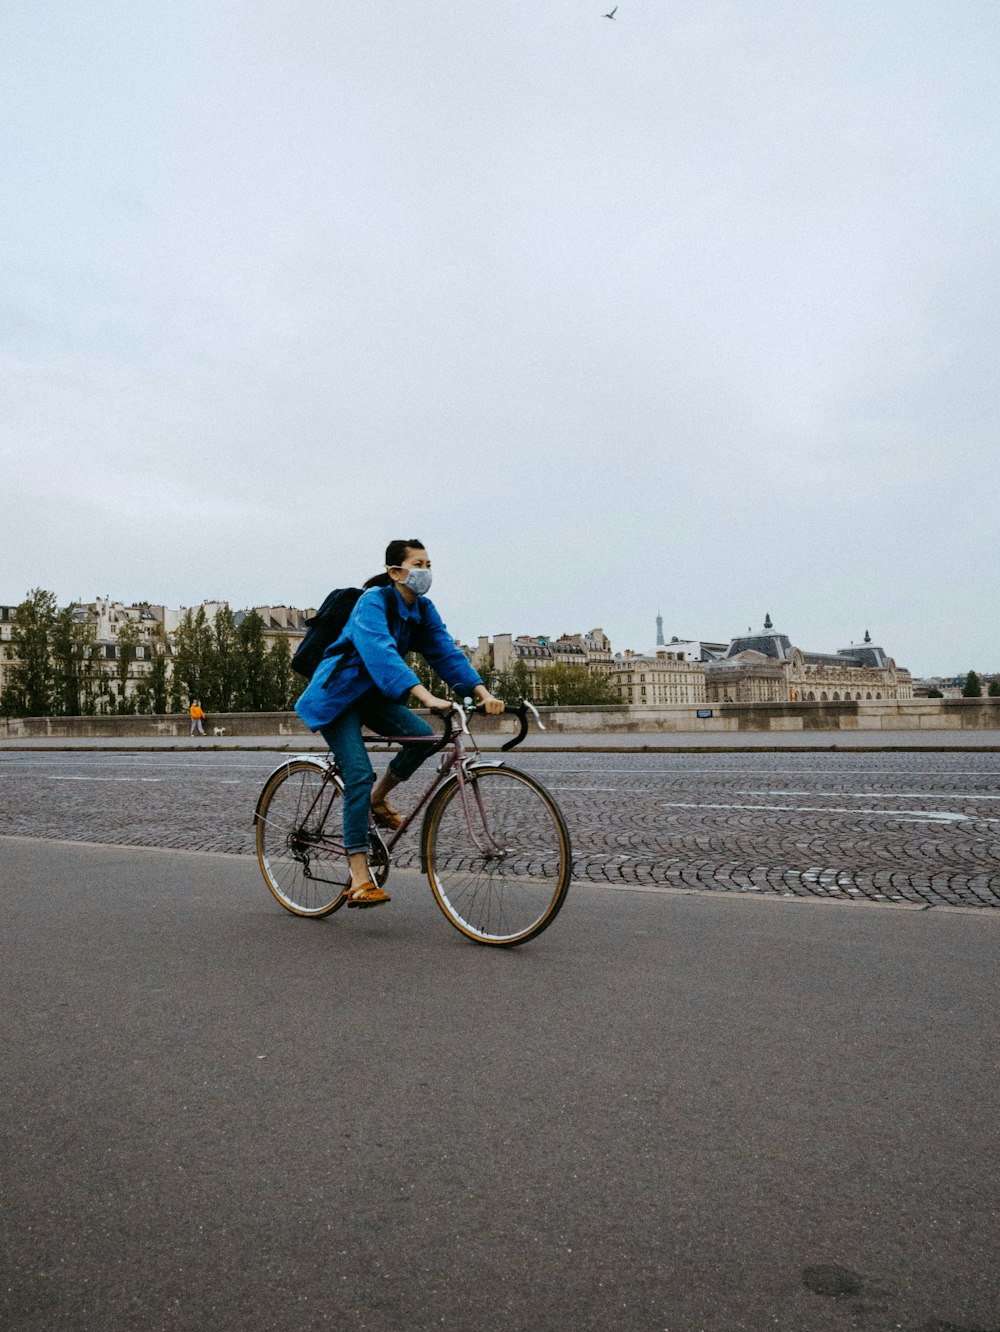 Mann in blauer Jacke fährt tagsüber Fahrrad auf der Straße